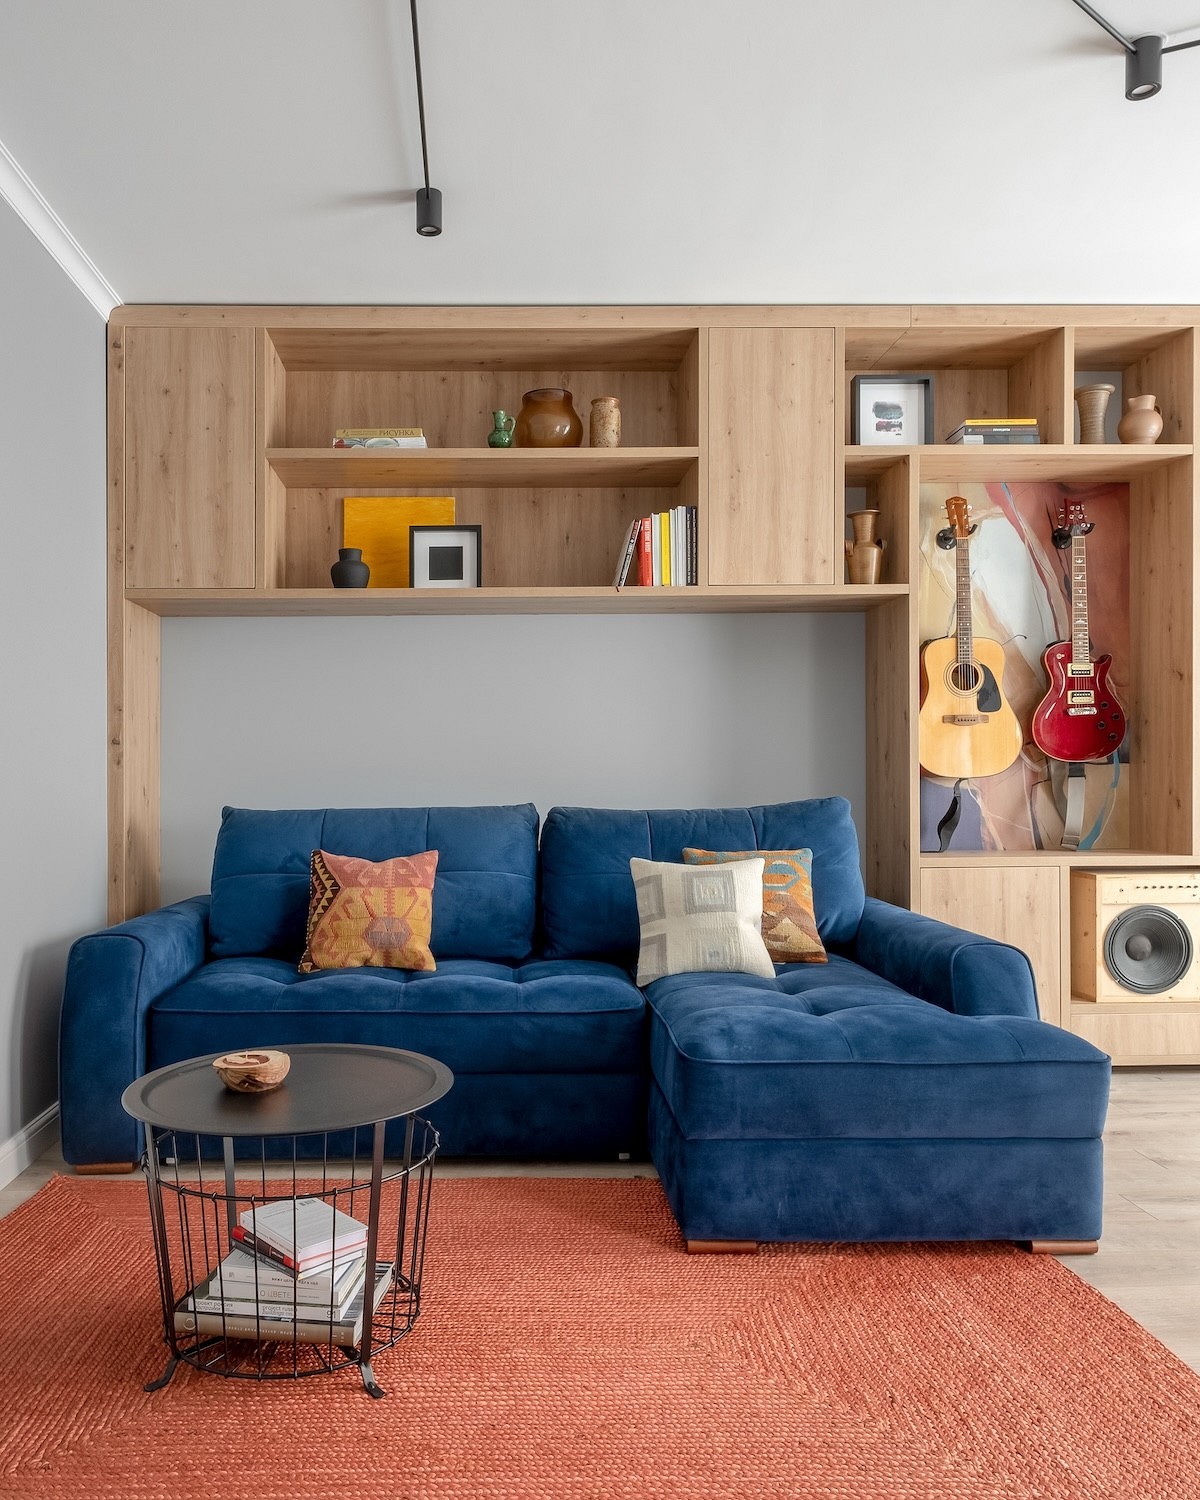 Как из типовой квартиры сделать стильную и уютную? Пример от дизайнера на площади 65 кв. м (фото до и после)13